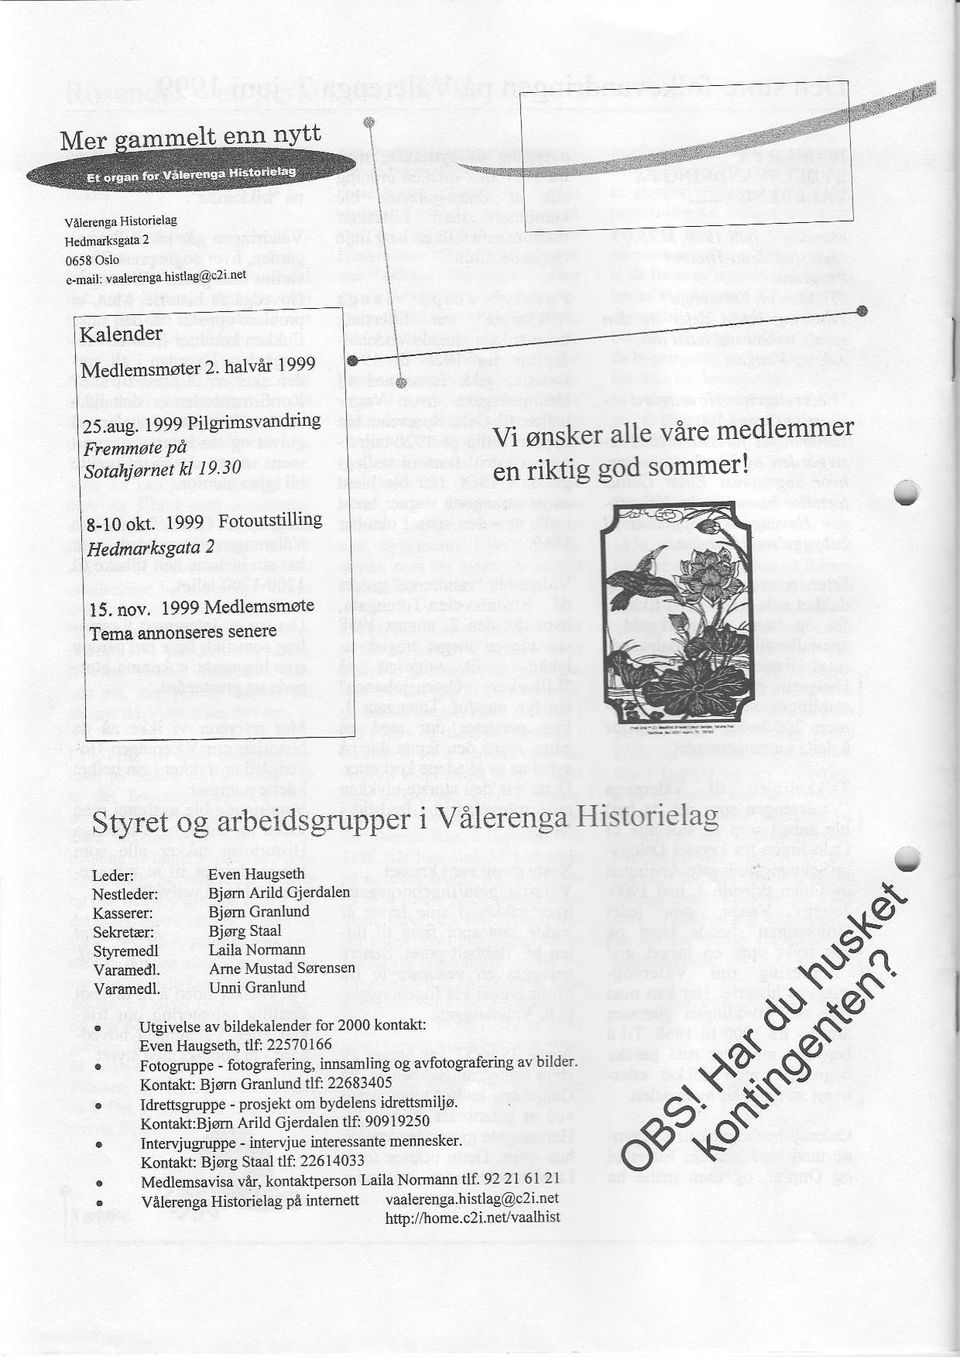 nov, 1999 Medlemsmote Tema adnonseres senele Sfyret og arbeidsgrupper i Vilerenga Historielag r,eder: Nestleder: Kasr rer: Seketar: Stfemedl Vararn ill.